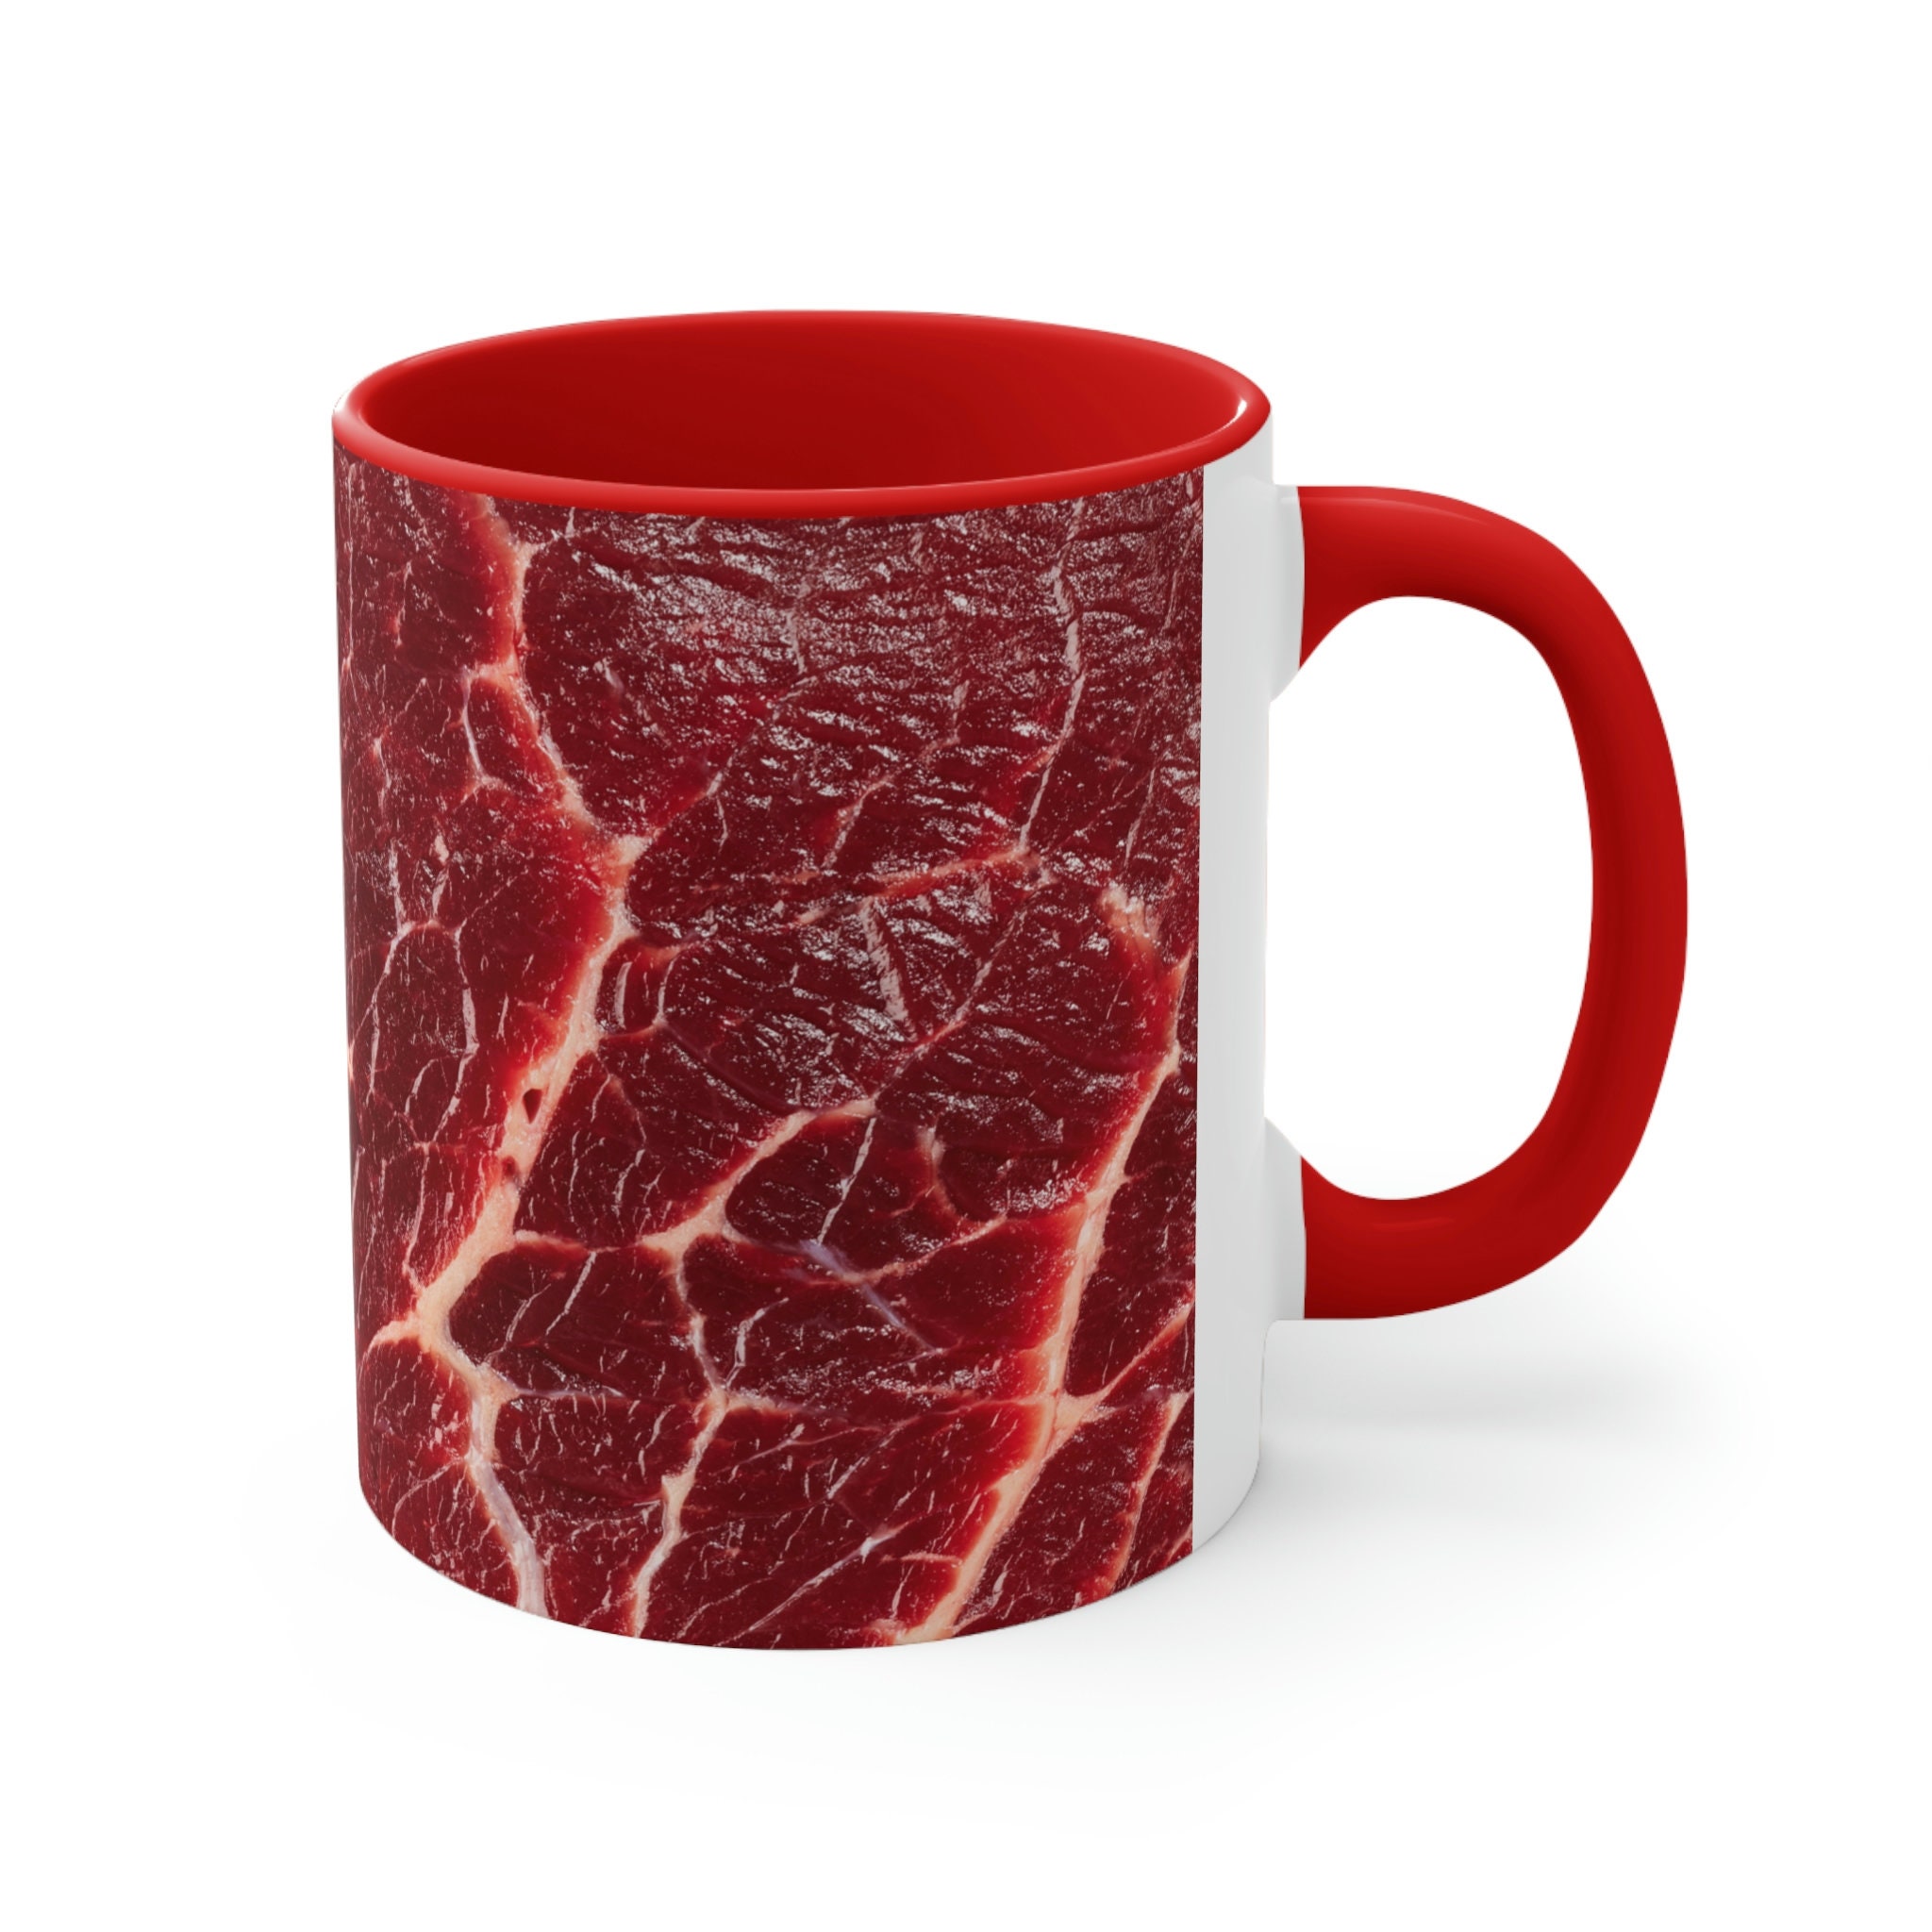 Meat Lover Mug, Meat Mug, Meat Lover Gift, Meat Coffee Mug, Barbeque Mug,  Gifts for Meat Lovers, Carnivore Mug, Steak Mug, Meat Gifts 